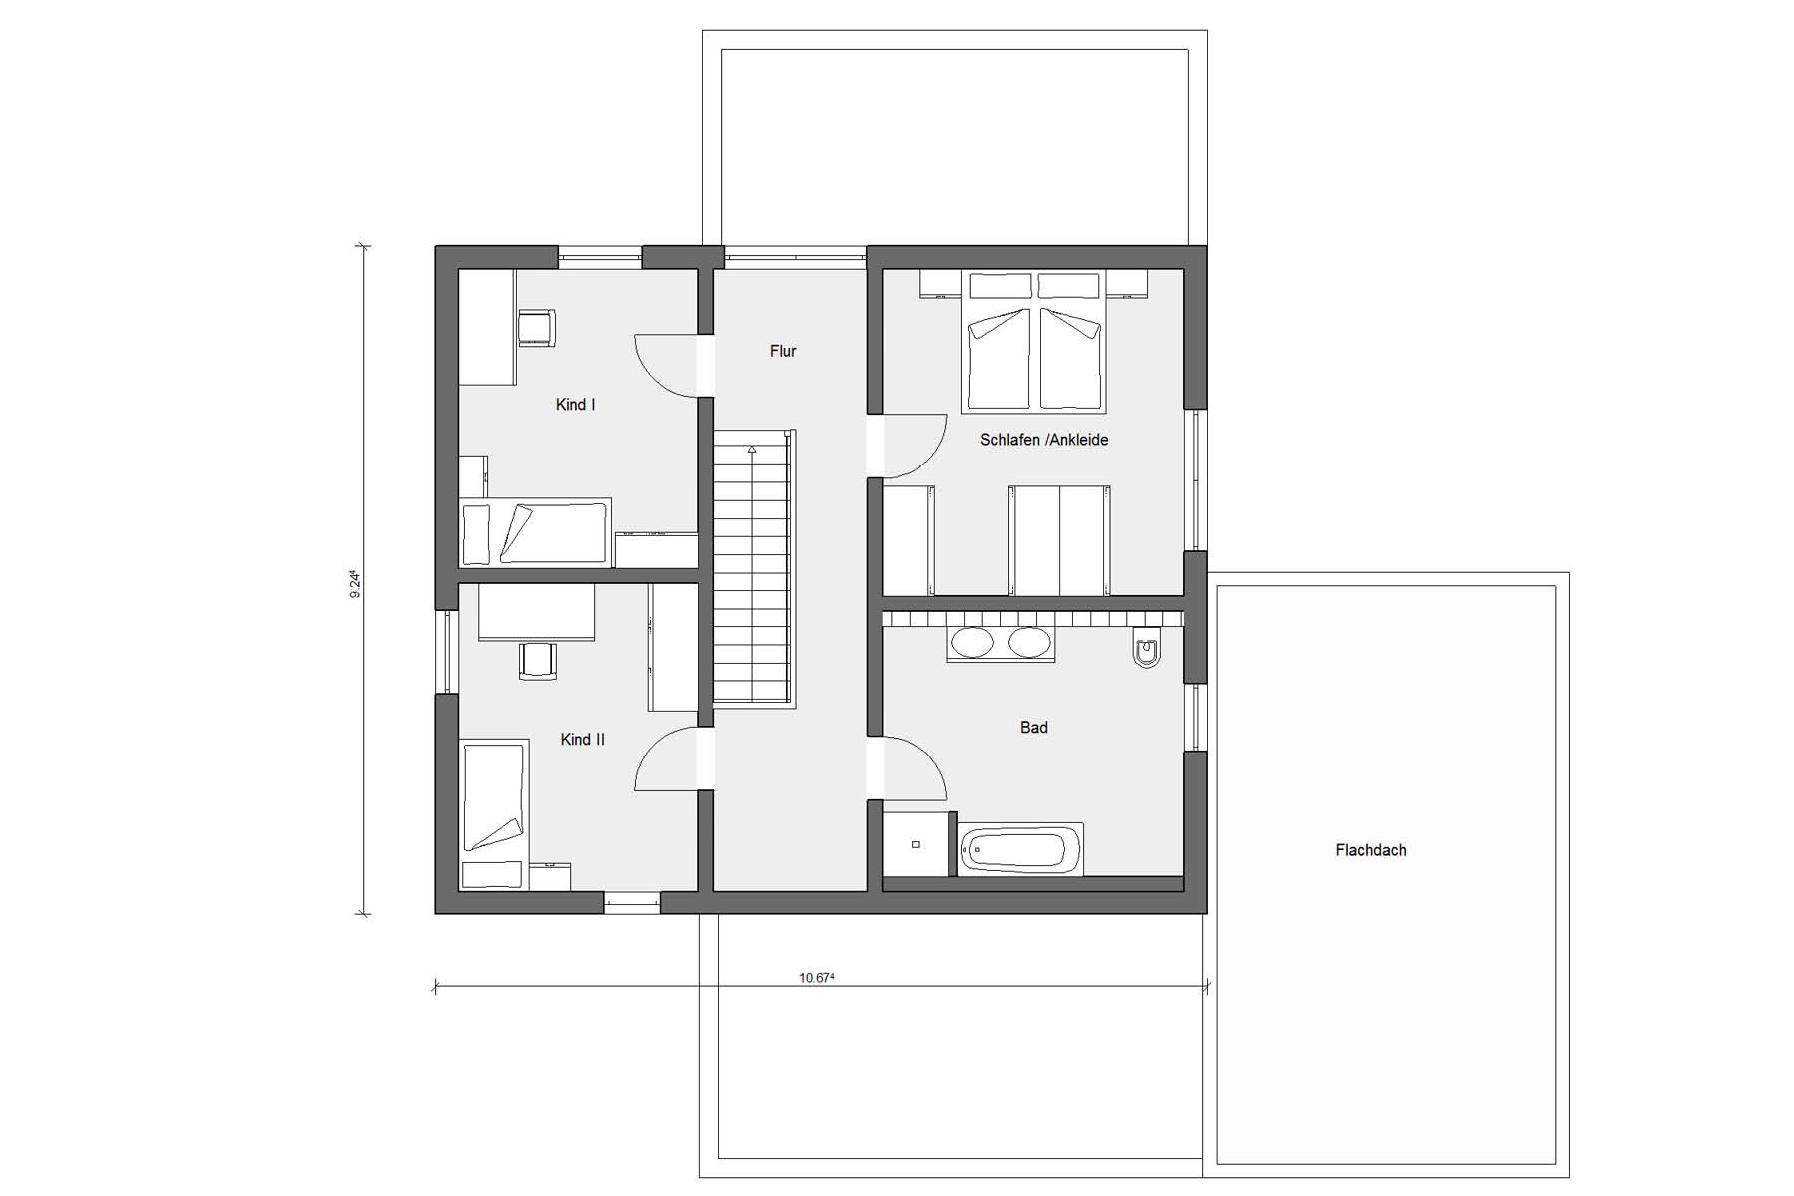 Plan d'étage grenier E 20-157.2 maison SCHÖNER WOHNEN